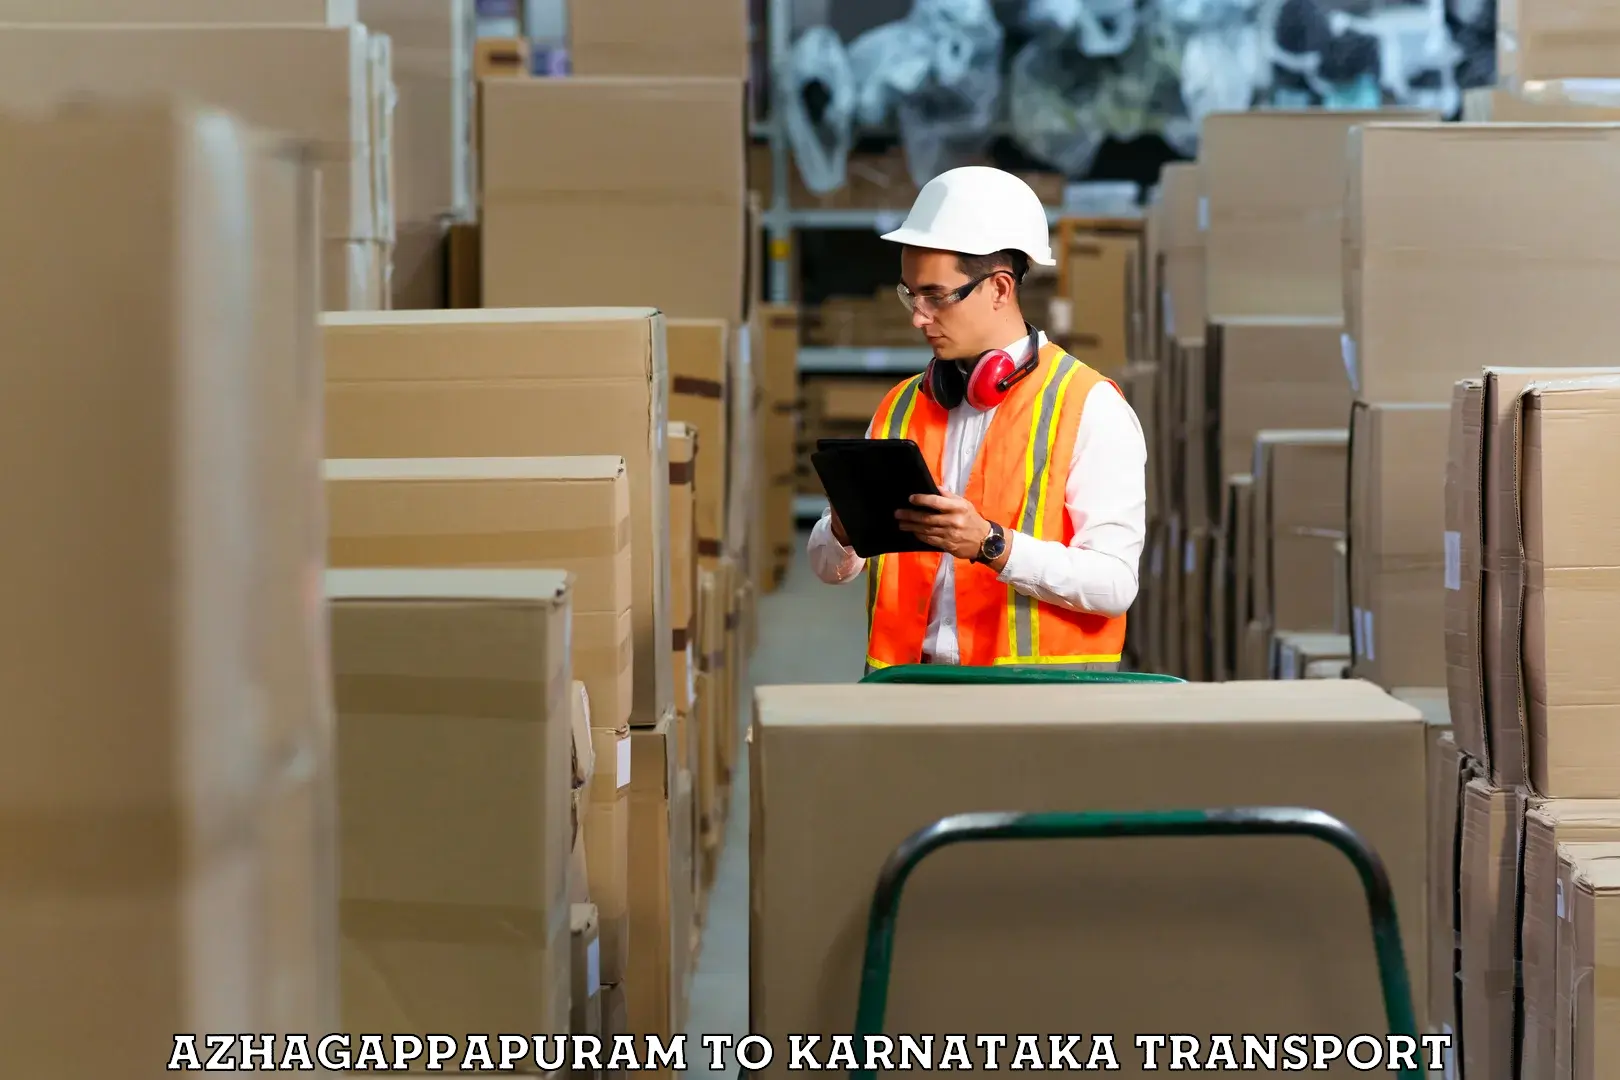 Logistics transportation services Azhagappapuram to Hulsoor